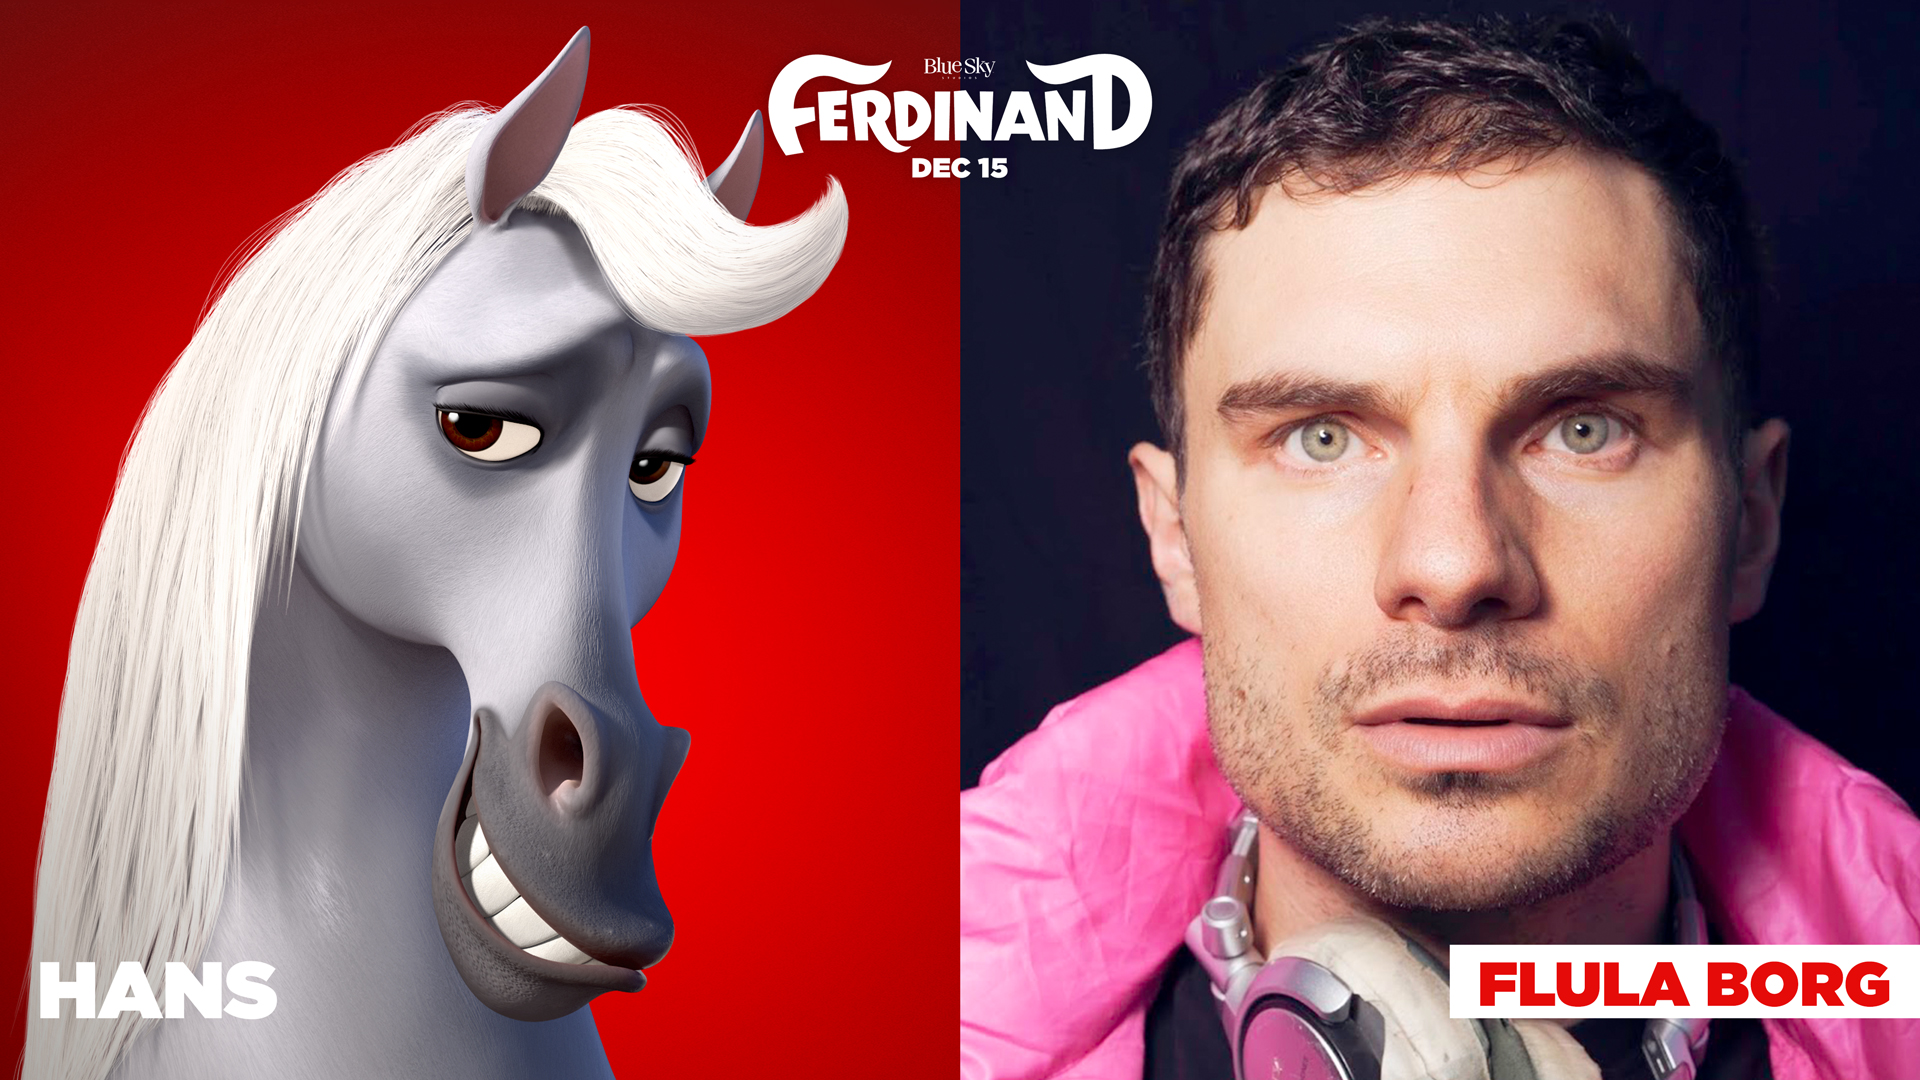 Ferdinand - Geht STIERisch ab!